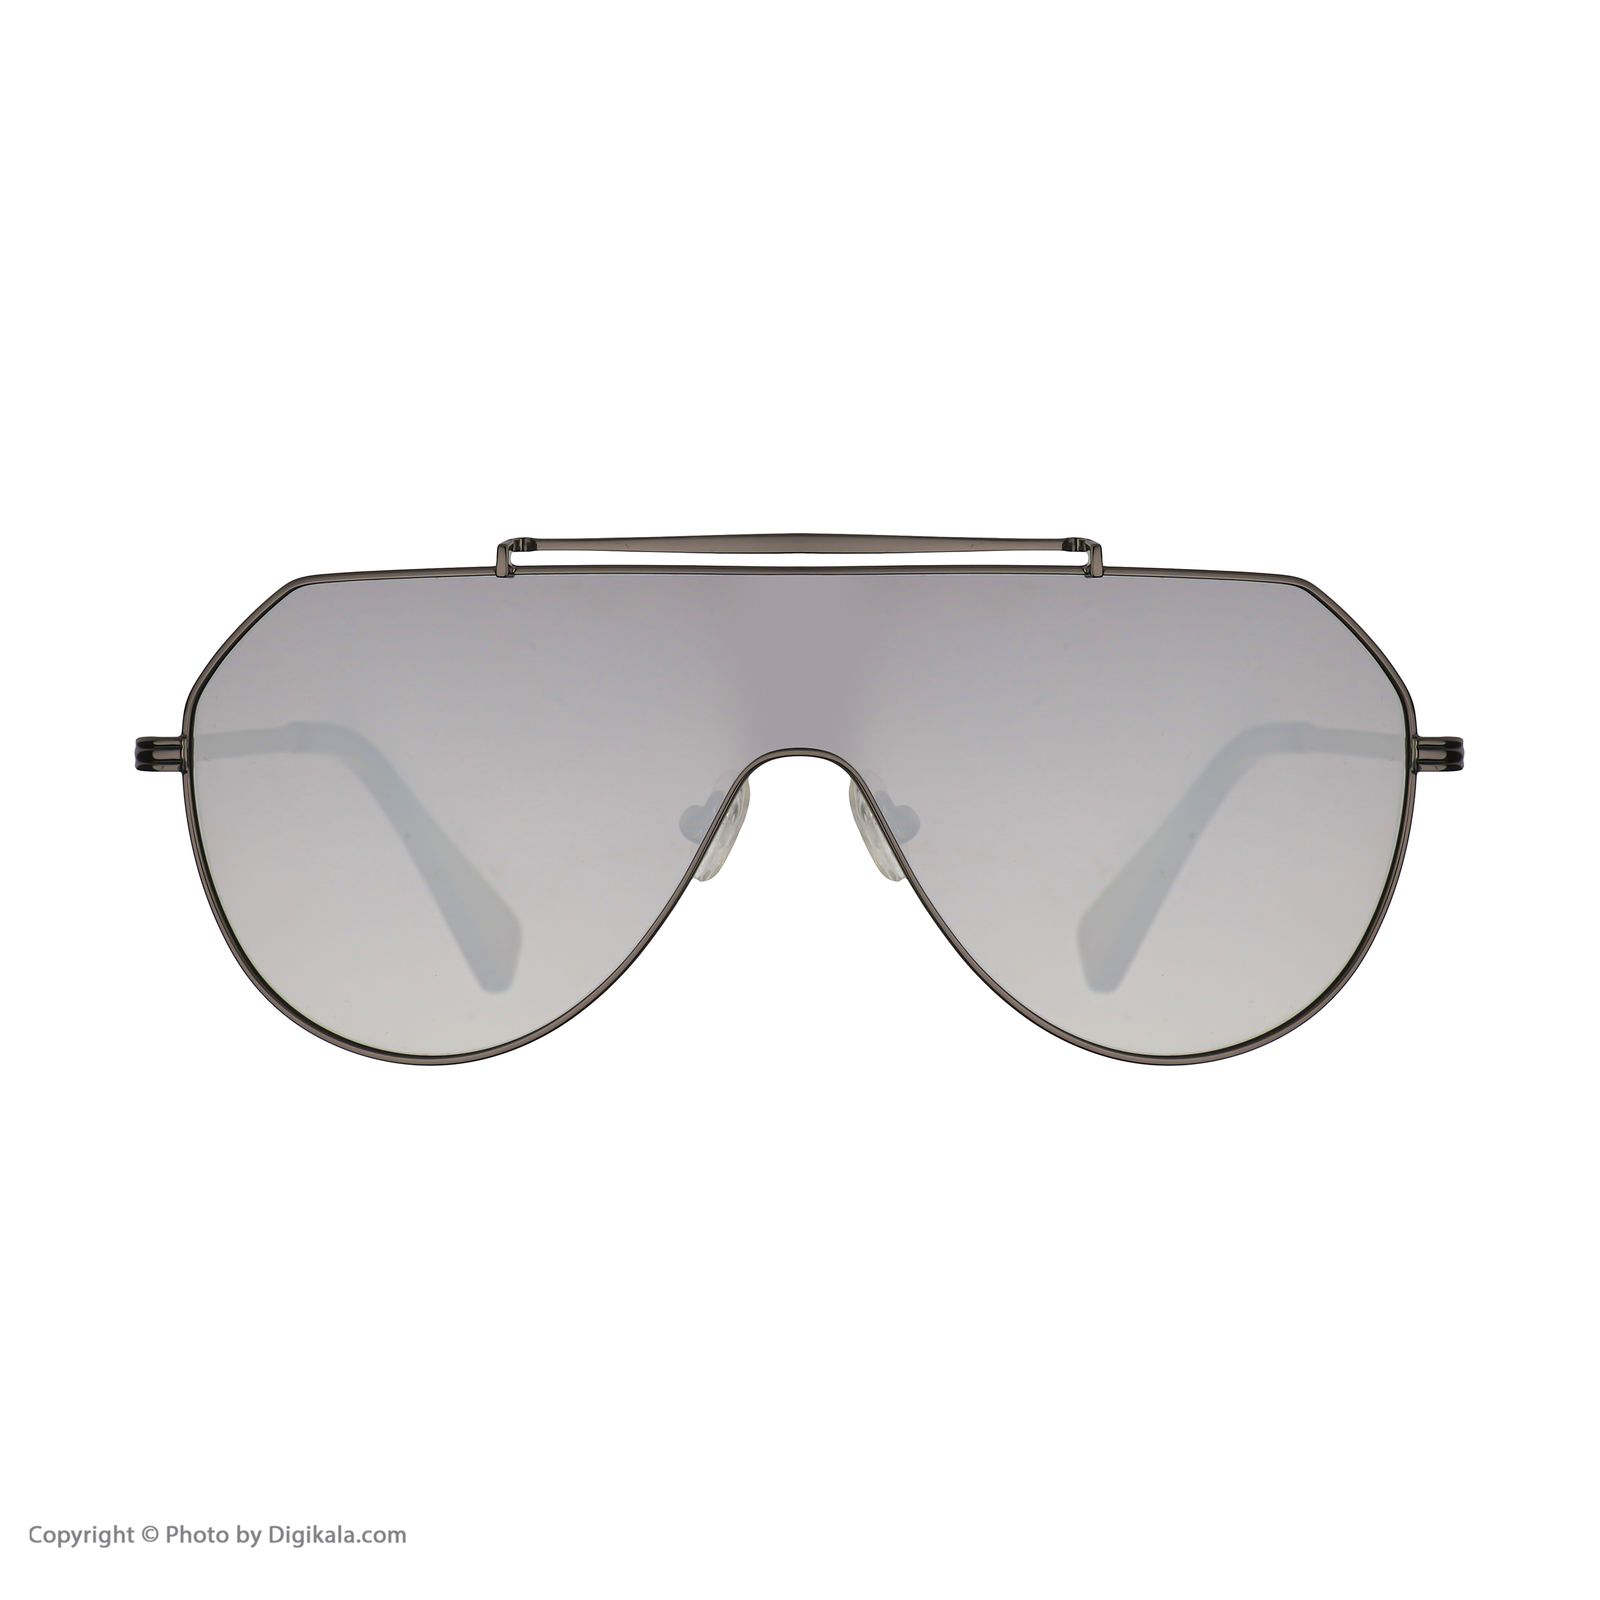 عینک آفتابی دیفرنکلین مدل 816 raptor av gunmetal silver -  - 2